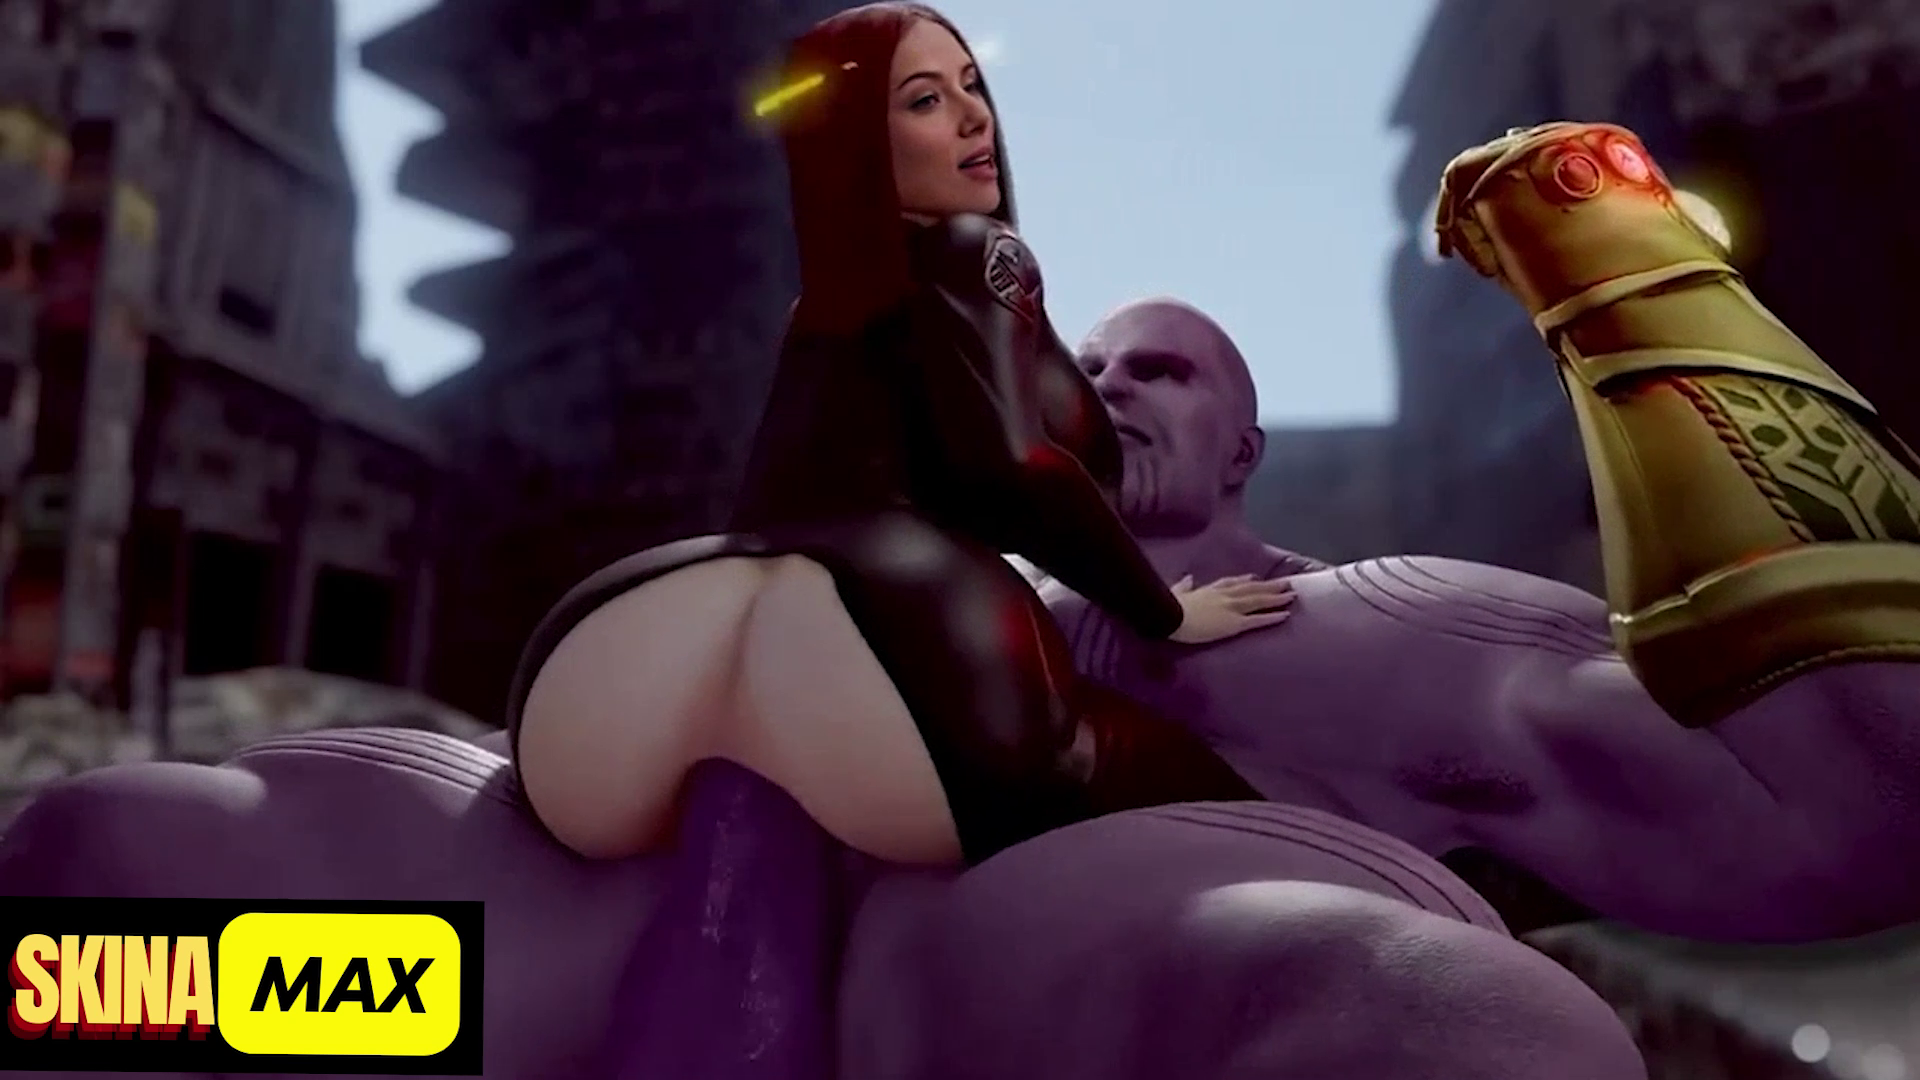 1920px x 1080px - Black widow is Broken by Thanos. Cloned Voice! DeepFake Porn - MrDeepFakes